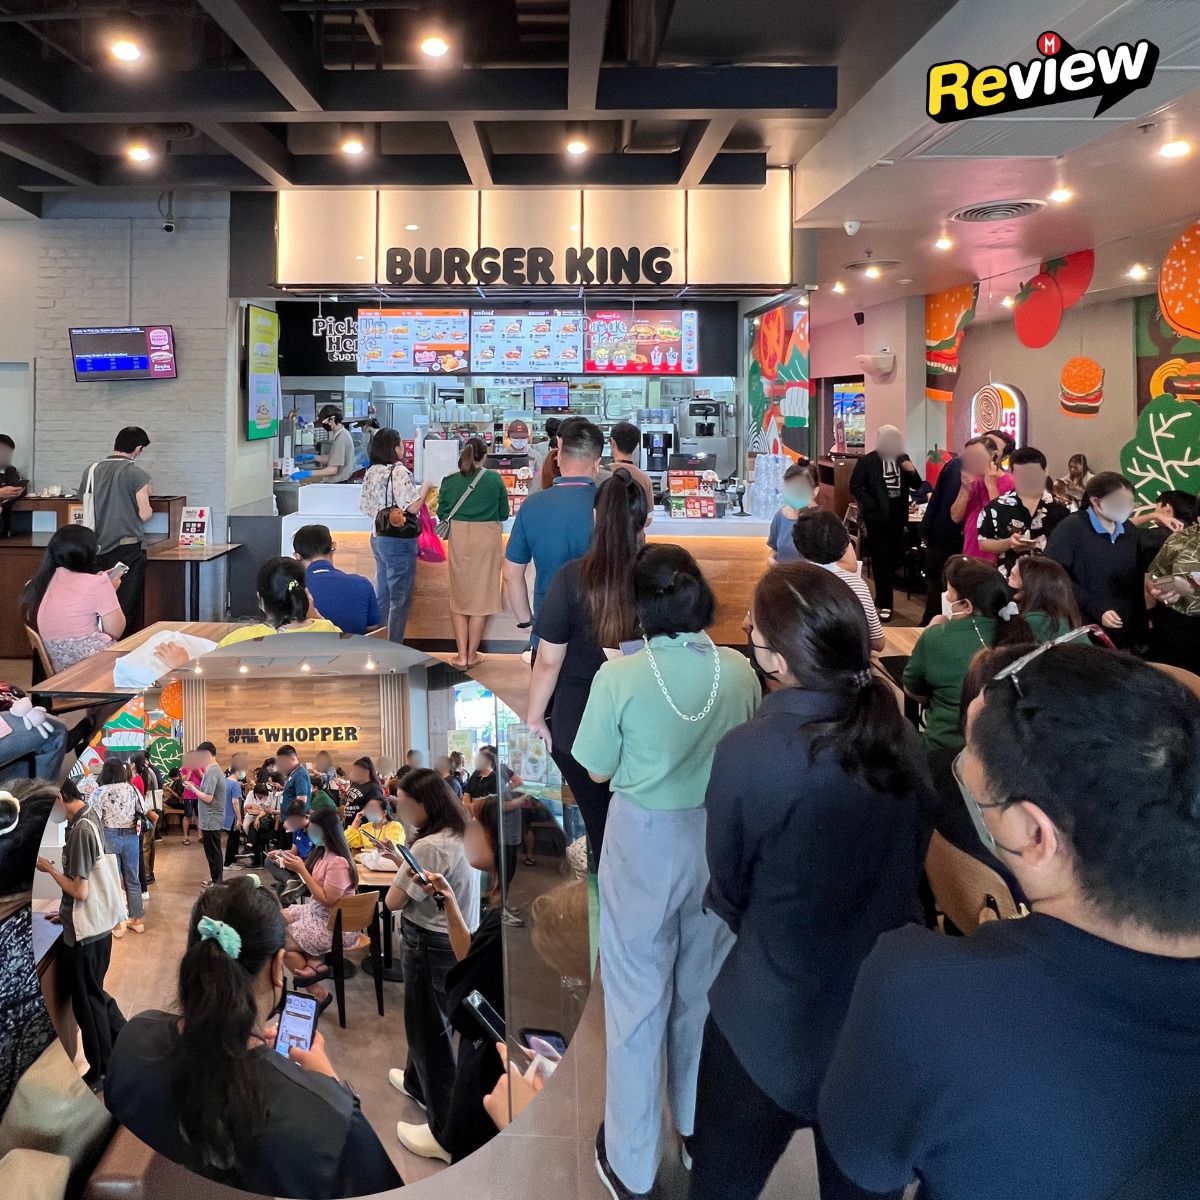 บรรยากาศ เบอร์เกอร์คิงส์ 29.- มื้อเที่ยงสาขา MBK
ส่วนใหญ่ตัดสินใจรอที่รับที่ร้าน 40 นาที ถึง 1.30 ชั่วโมง
#MarketeerReview
#BurgerKingTH #BKโปรแห่งปี #BKโปร29